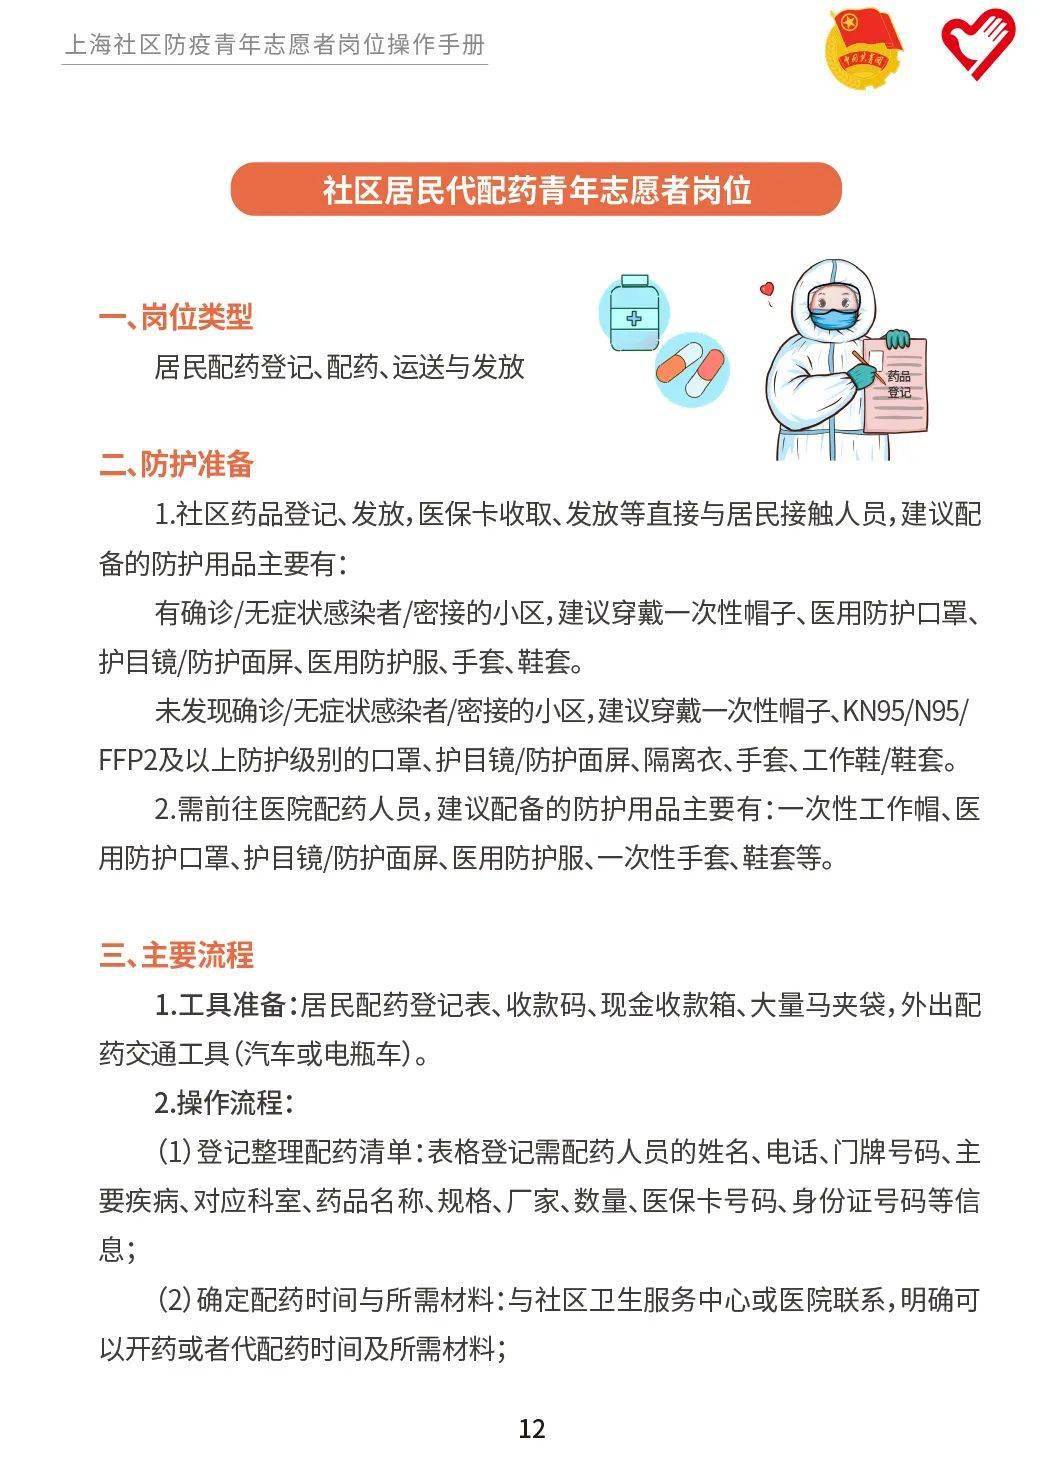 上海防疫青年志愿者岗位实务手册上线为不同岗位量身定制快收藏